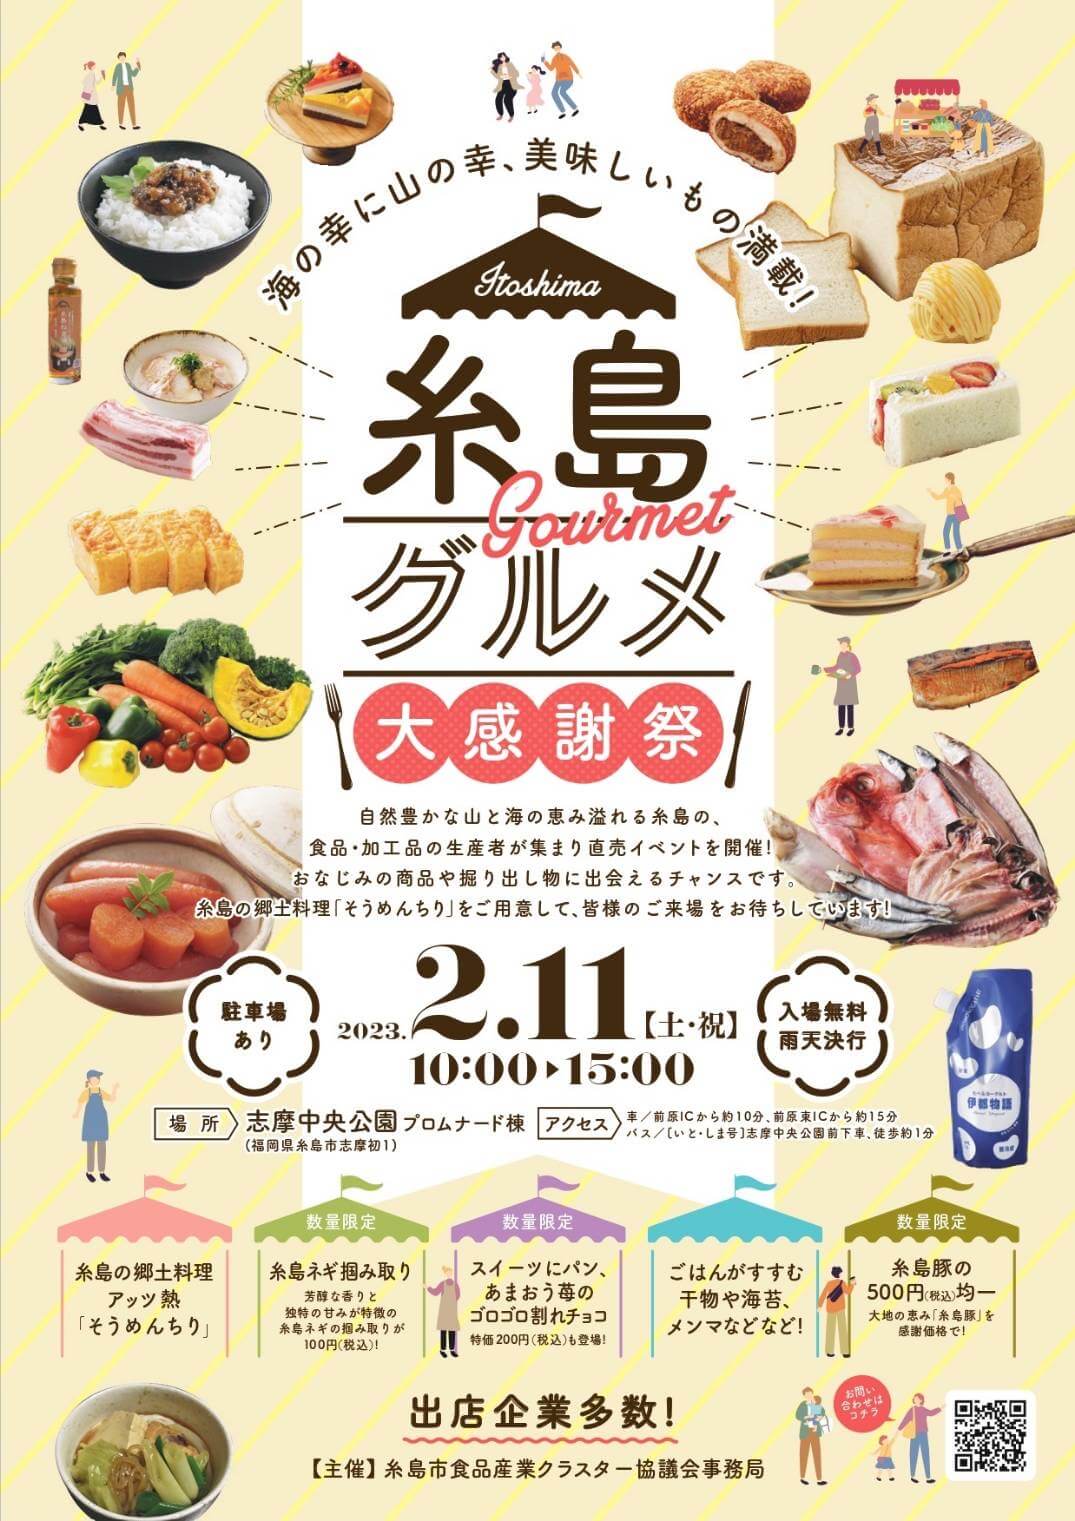 Itoshima Gourmet Thanksgiving Market, 糸島グルメ大感謝祭